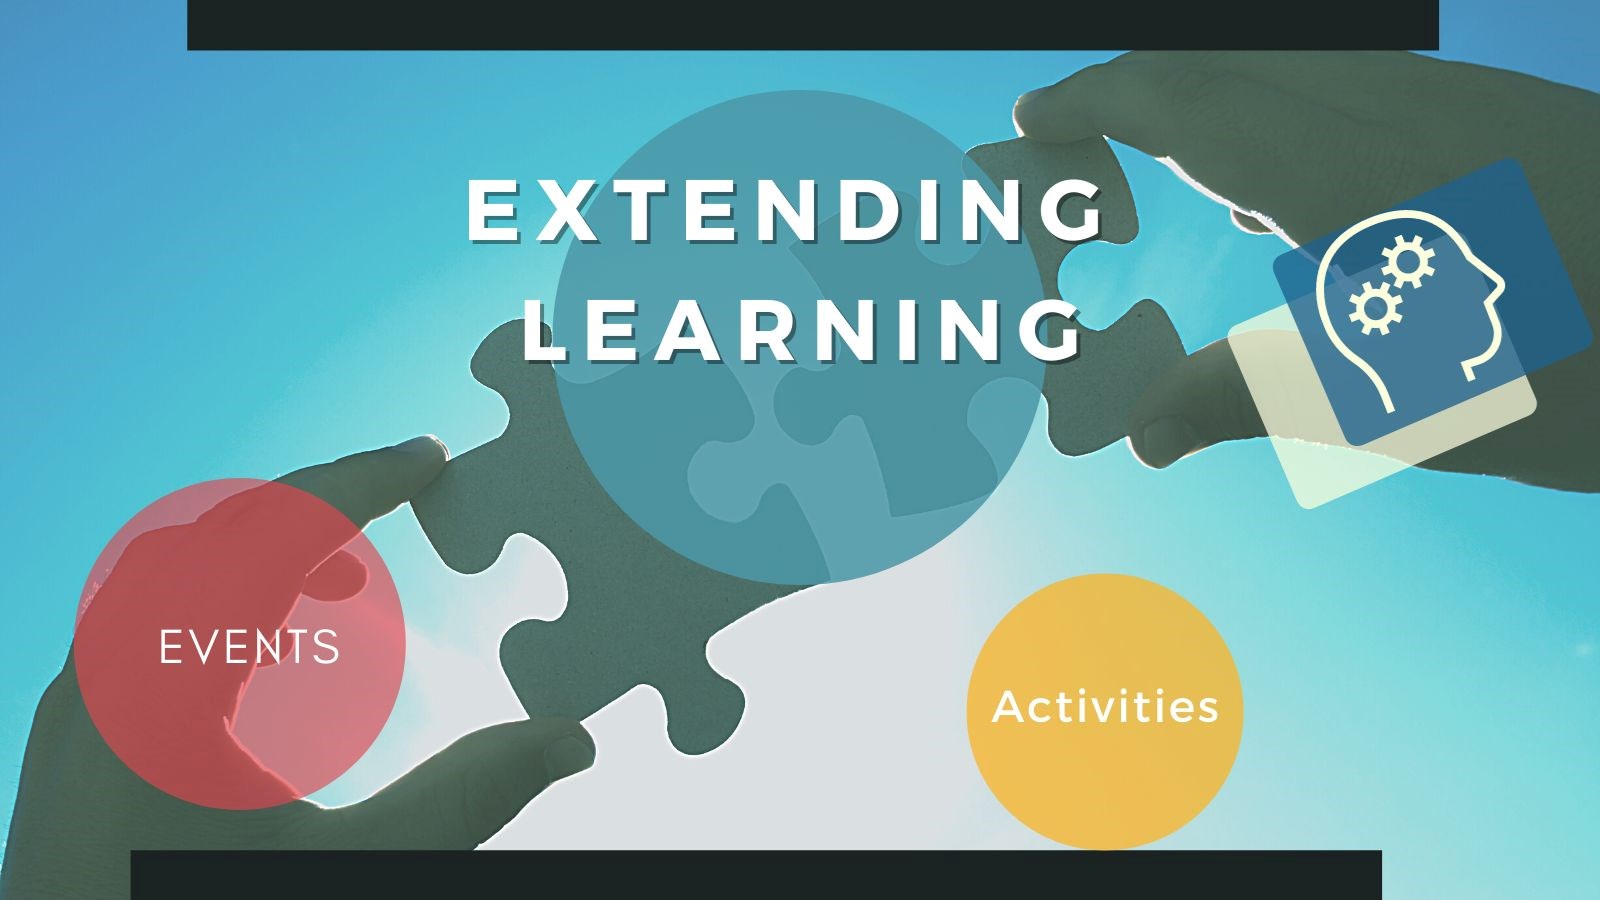 Extending Learning